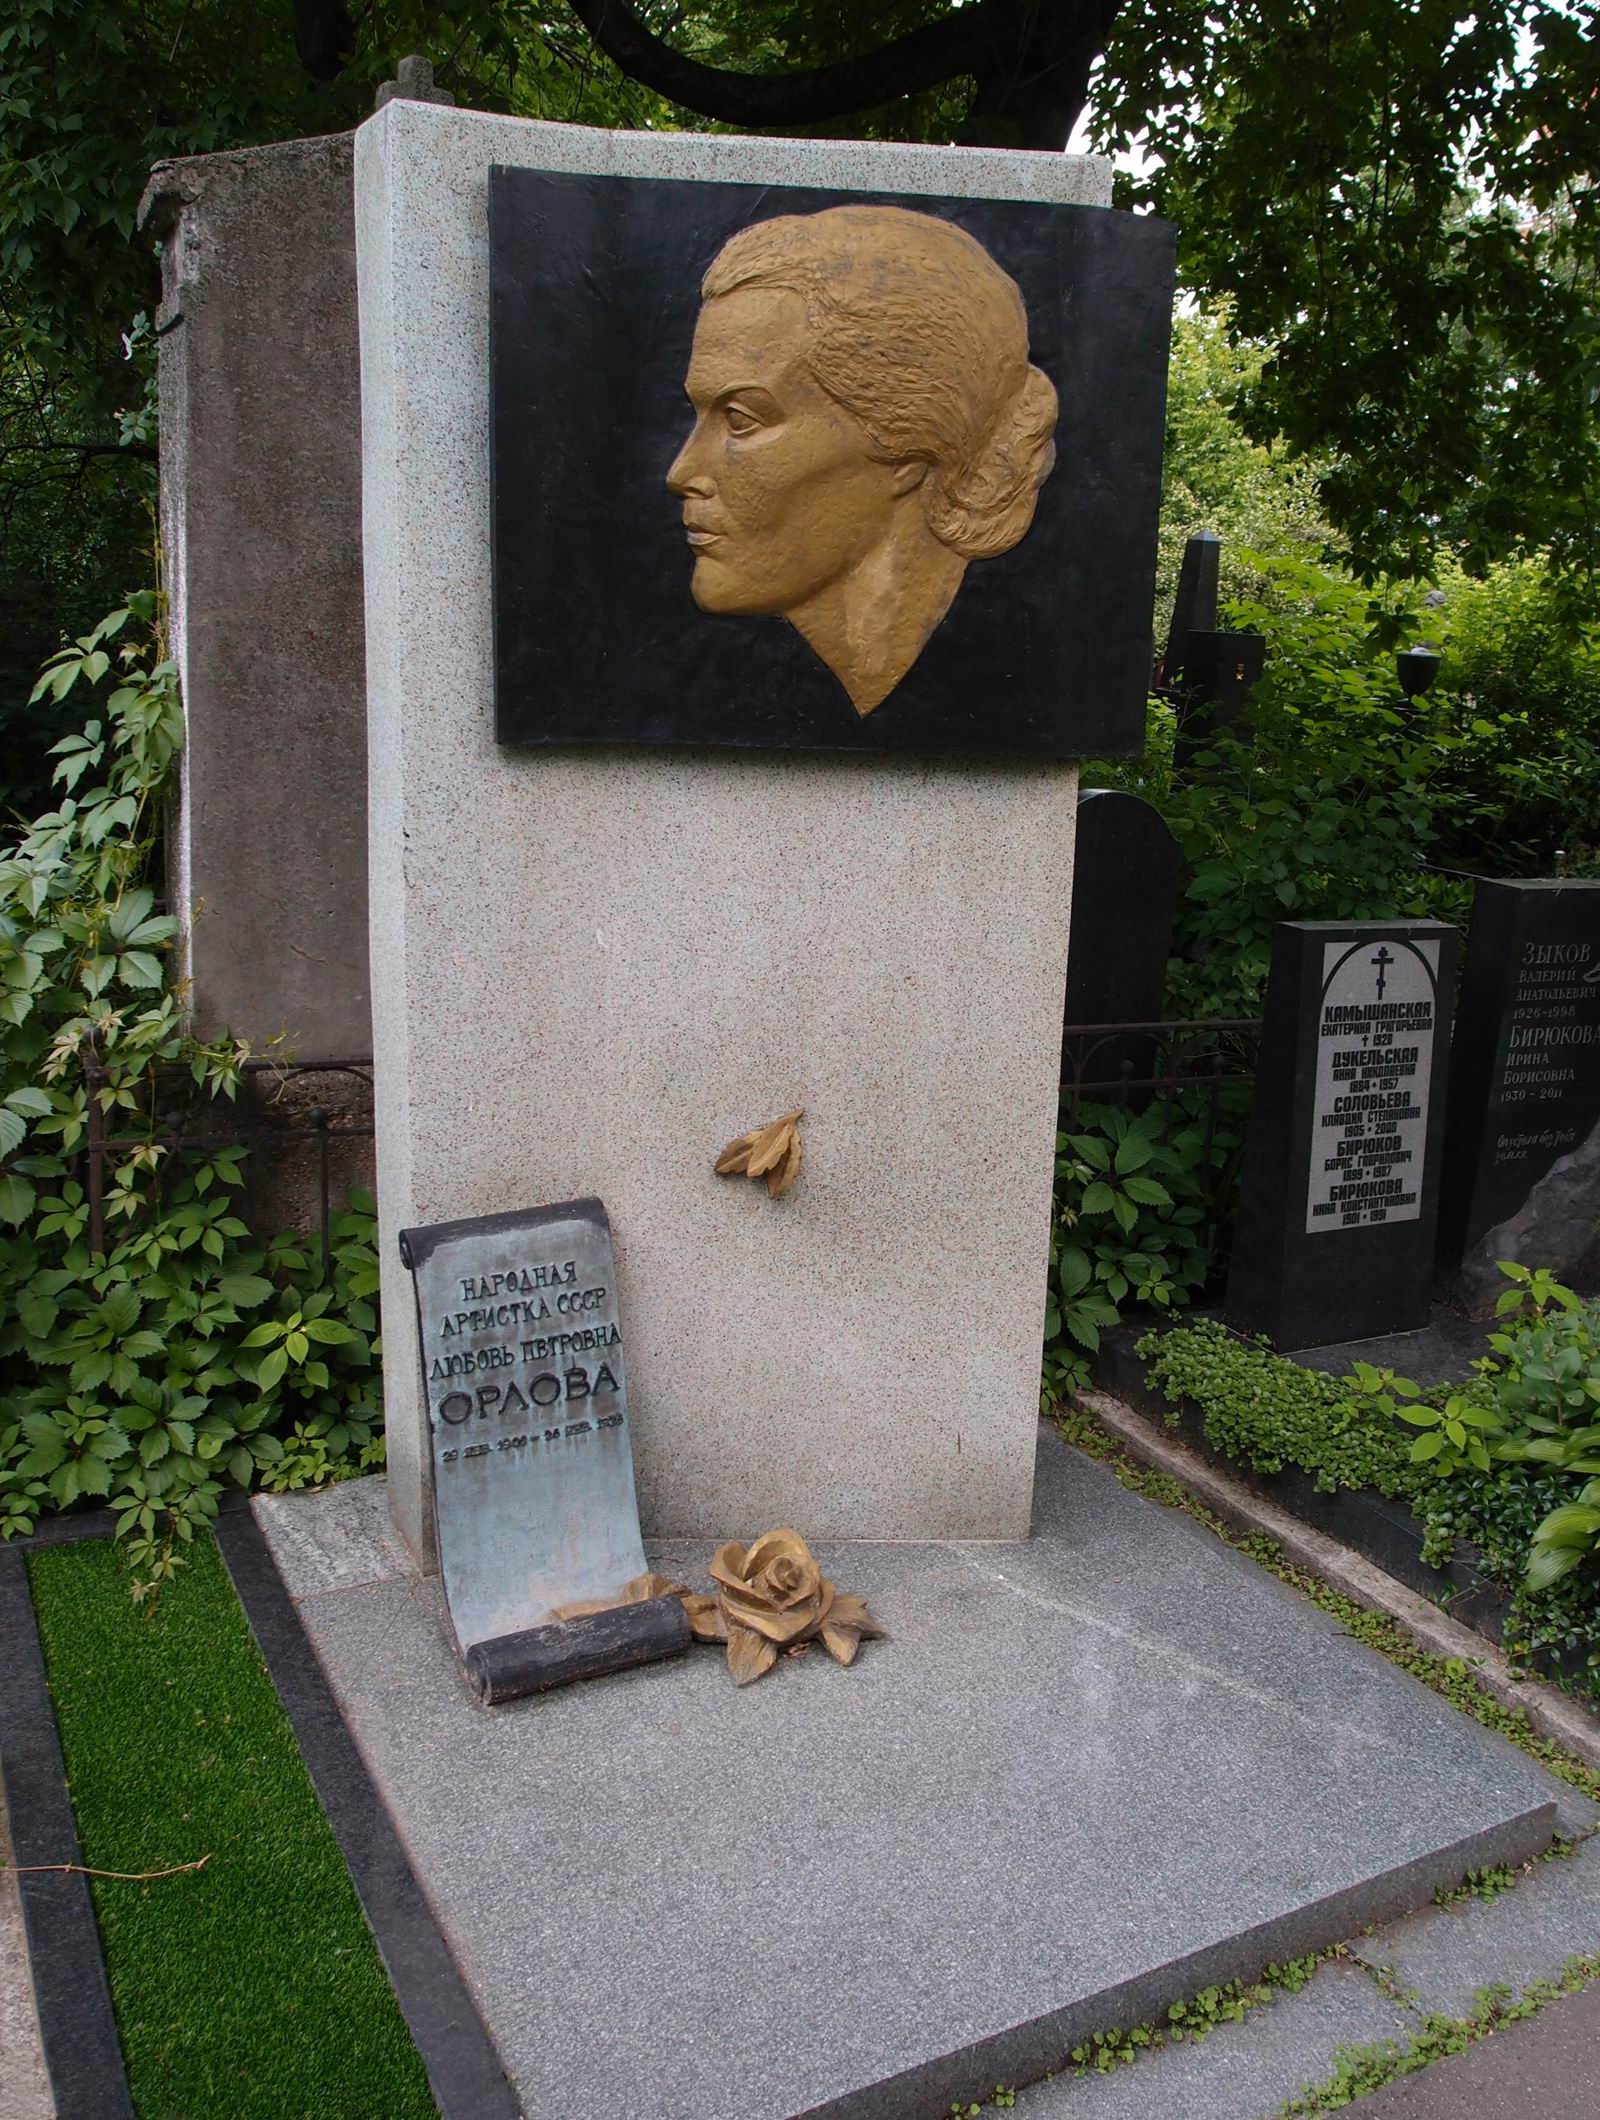 Памятник на могиле Орловой Л.П. (1902-1975), ск. Ю.Чернов, арх. Г.Исакович, на Новодевичьем кладбище (3-21-3). Нажмите левую кнопку мыши чтобы увидеть предыдущий вариант.